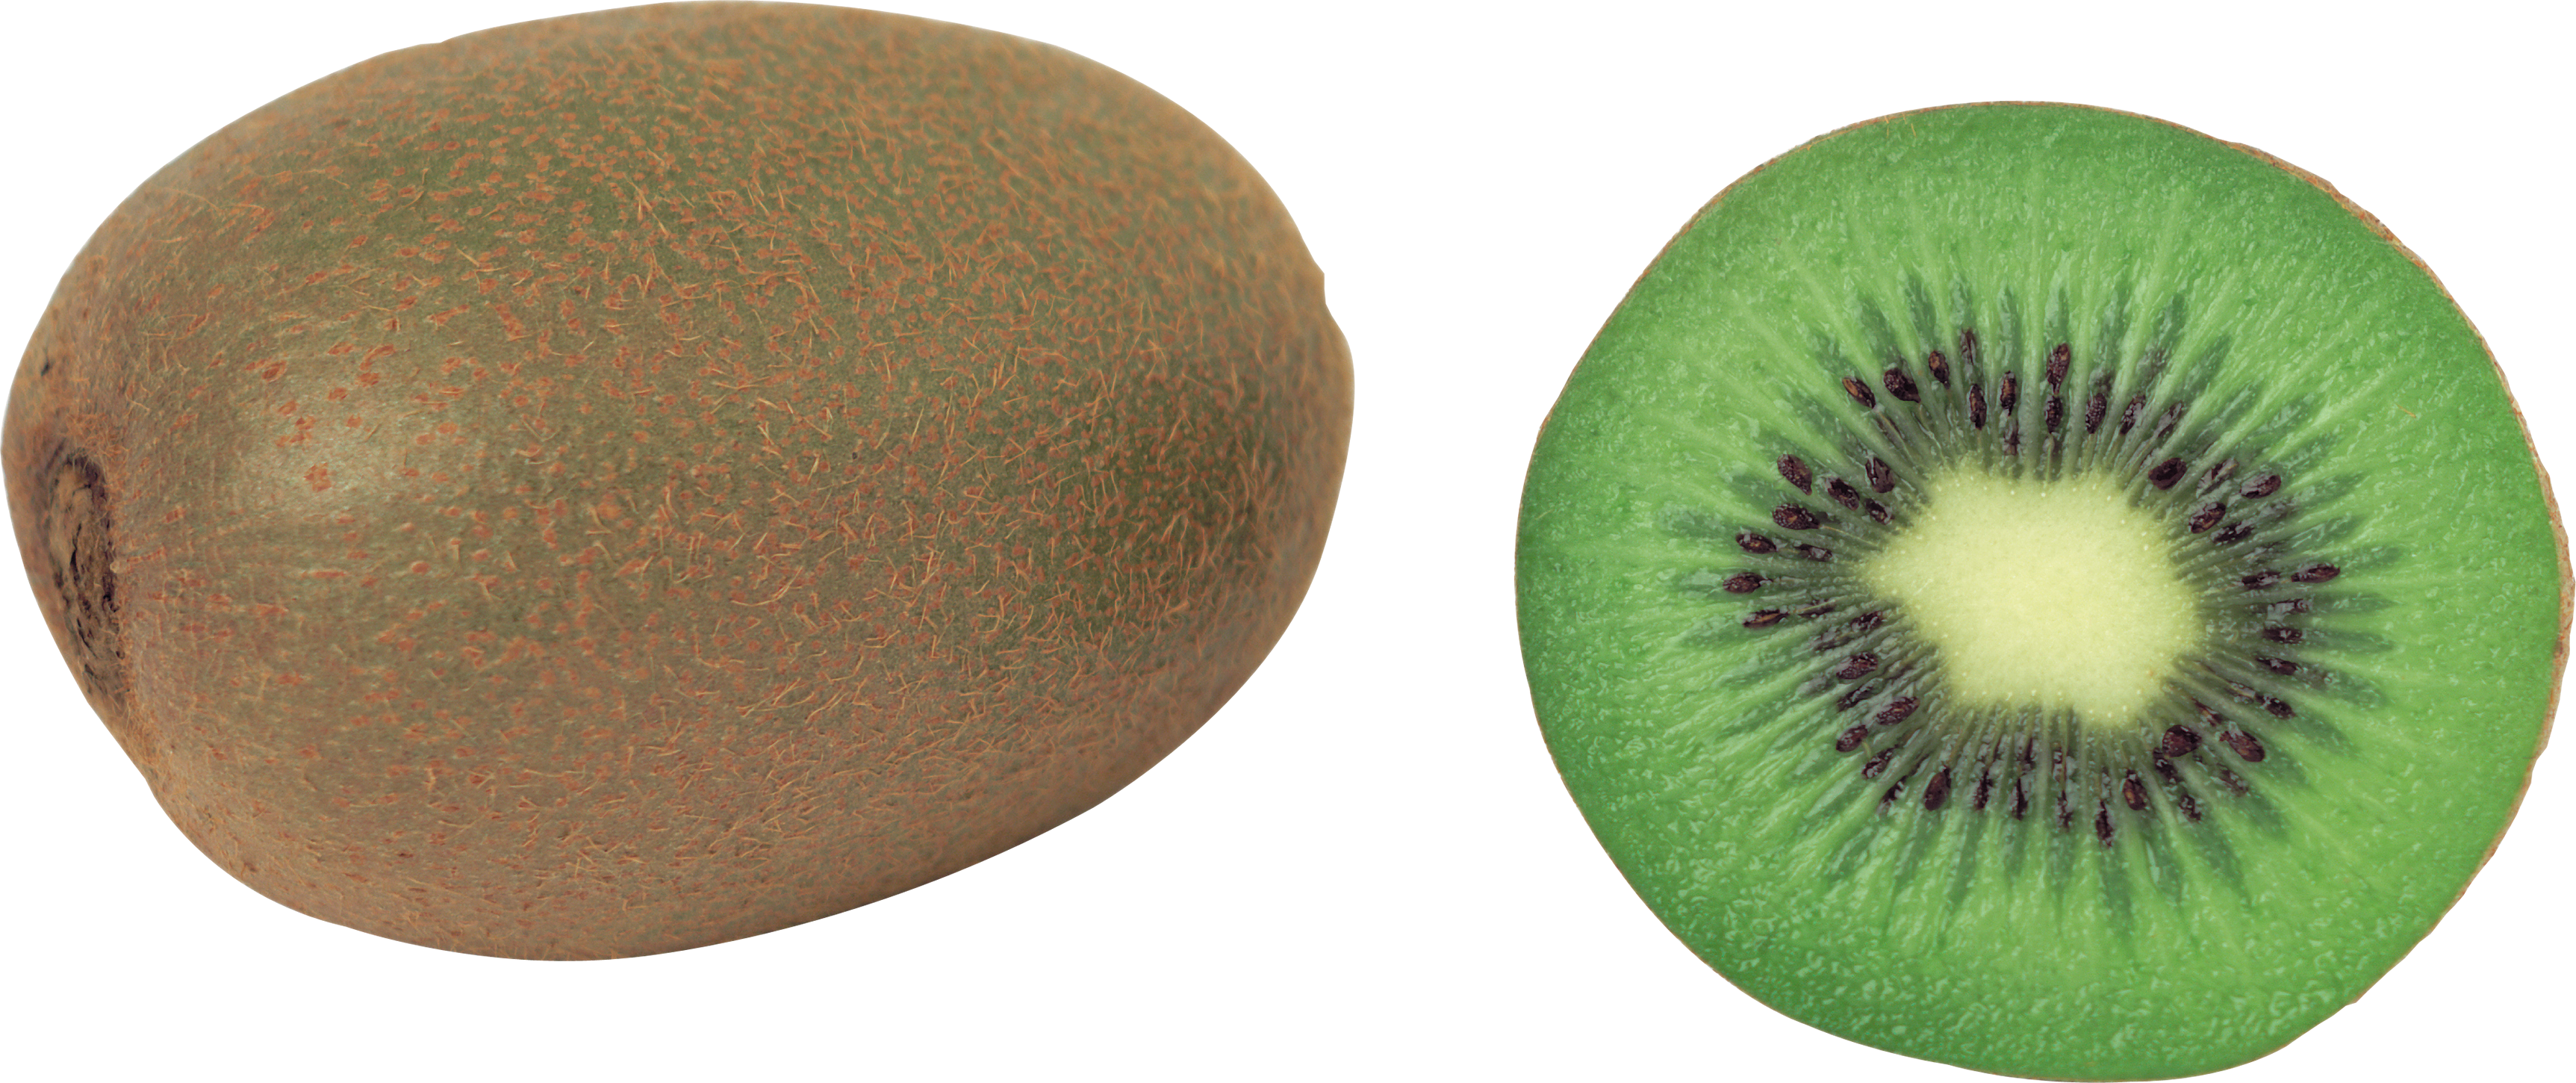 Kiwi PNG image, free fruit kiwi PNG pictures download